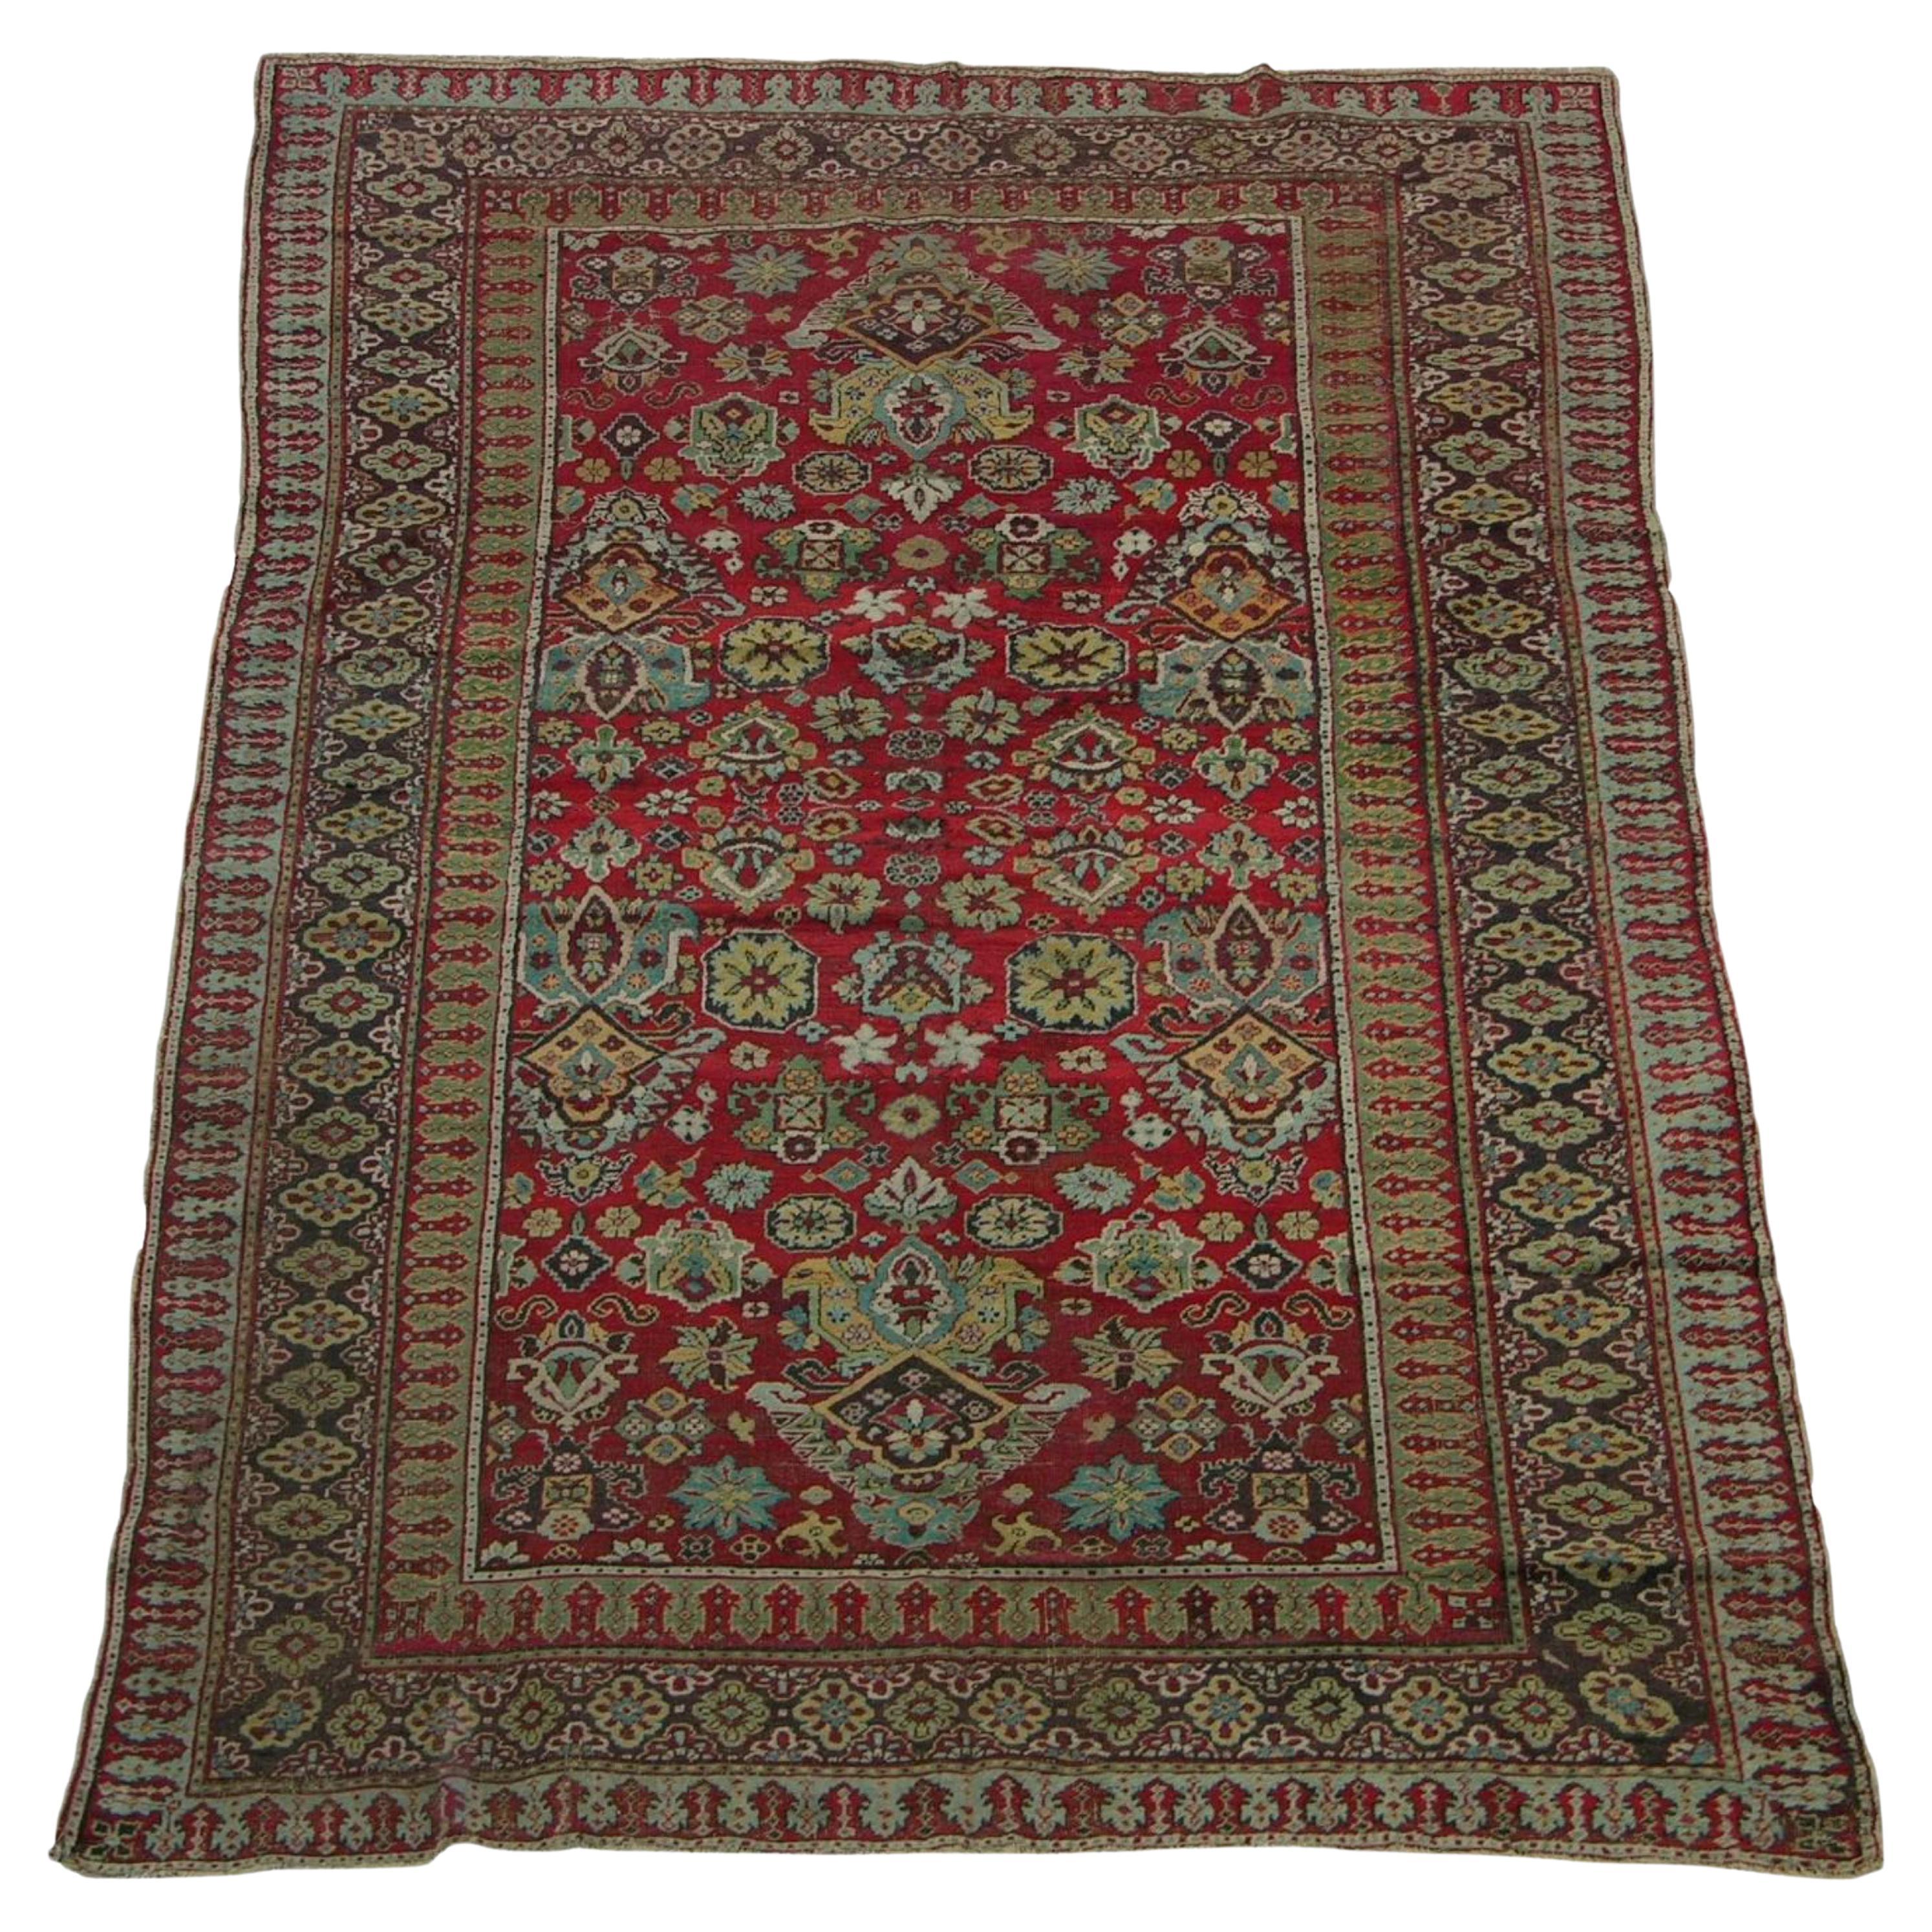 Antiker indischer Amritsar-Teppich aus dem Jahr 1900